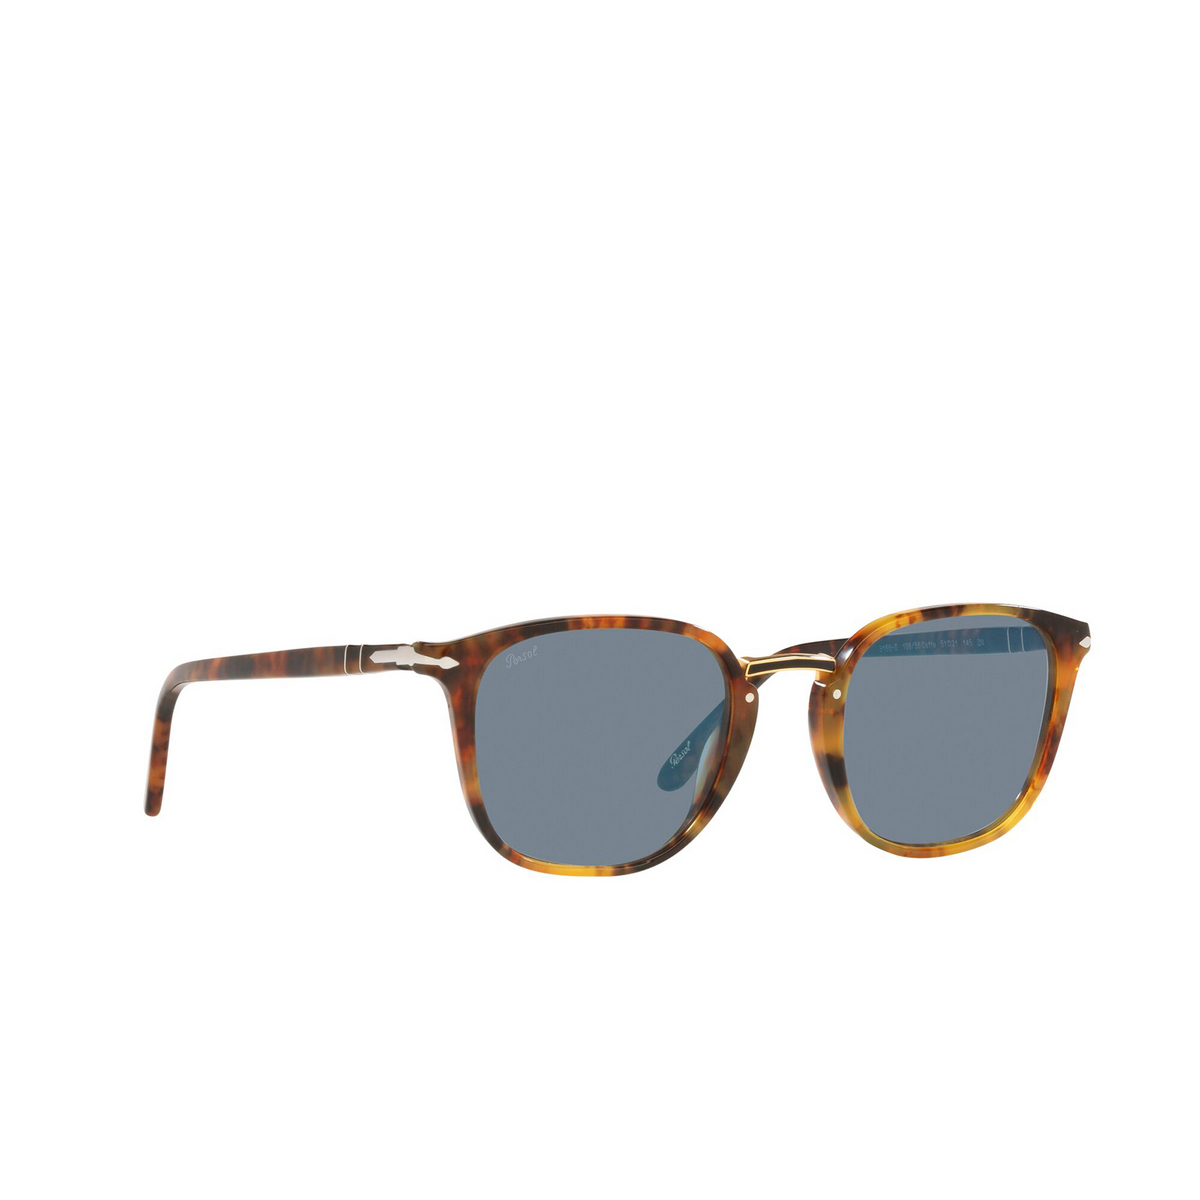 Persol® Square Sunglasses: PO3186S color Caffe 108/56 - three-quarters view.